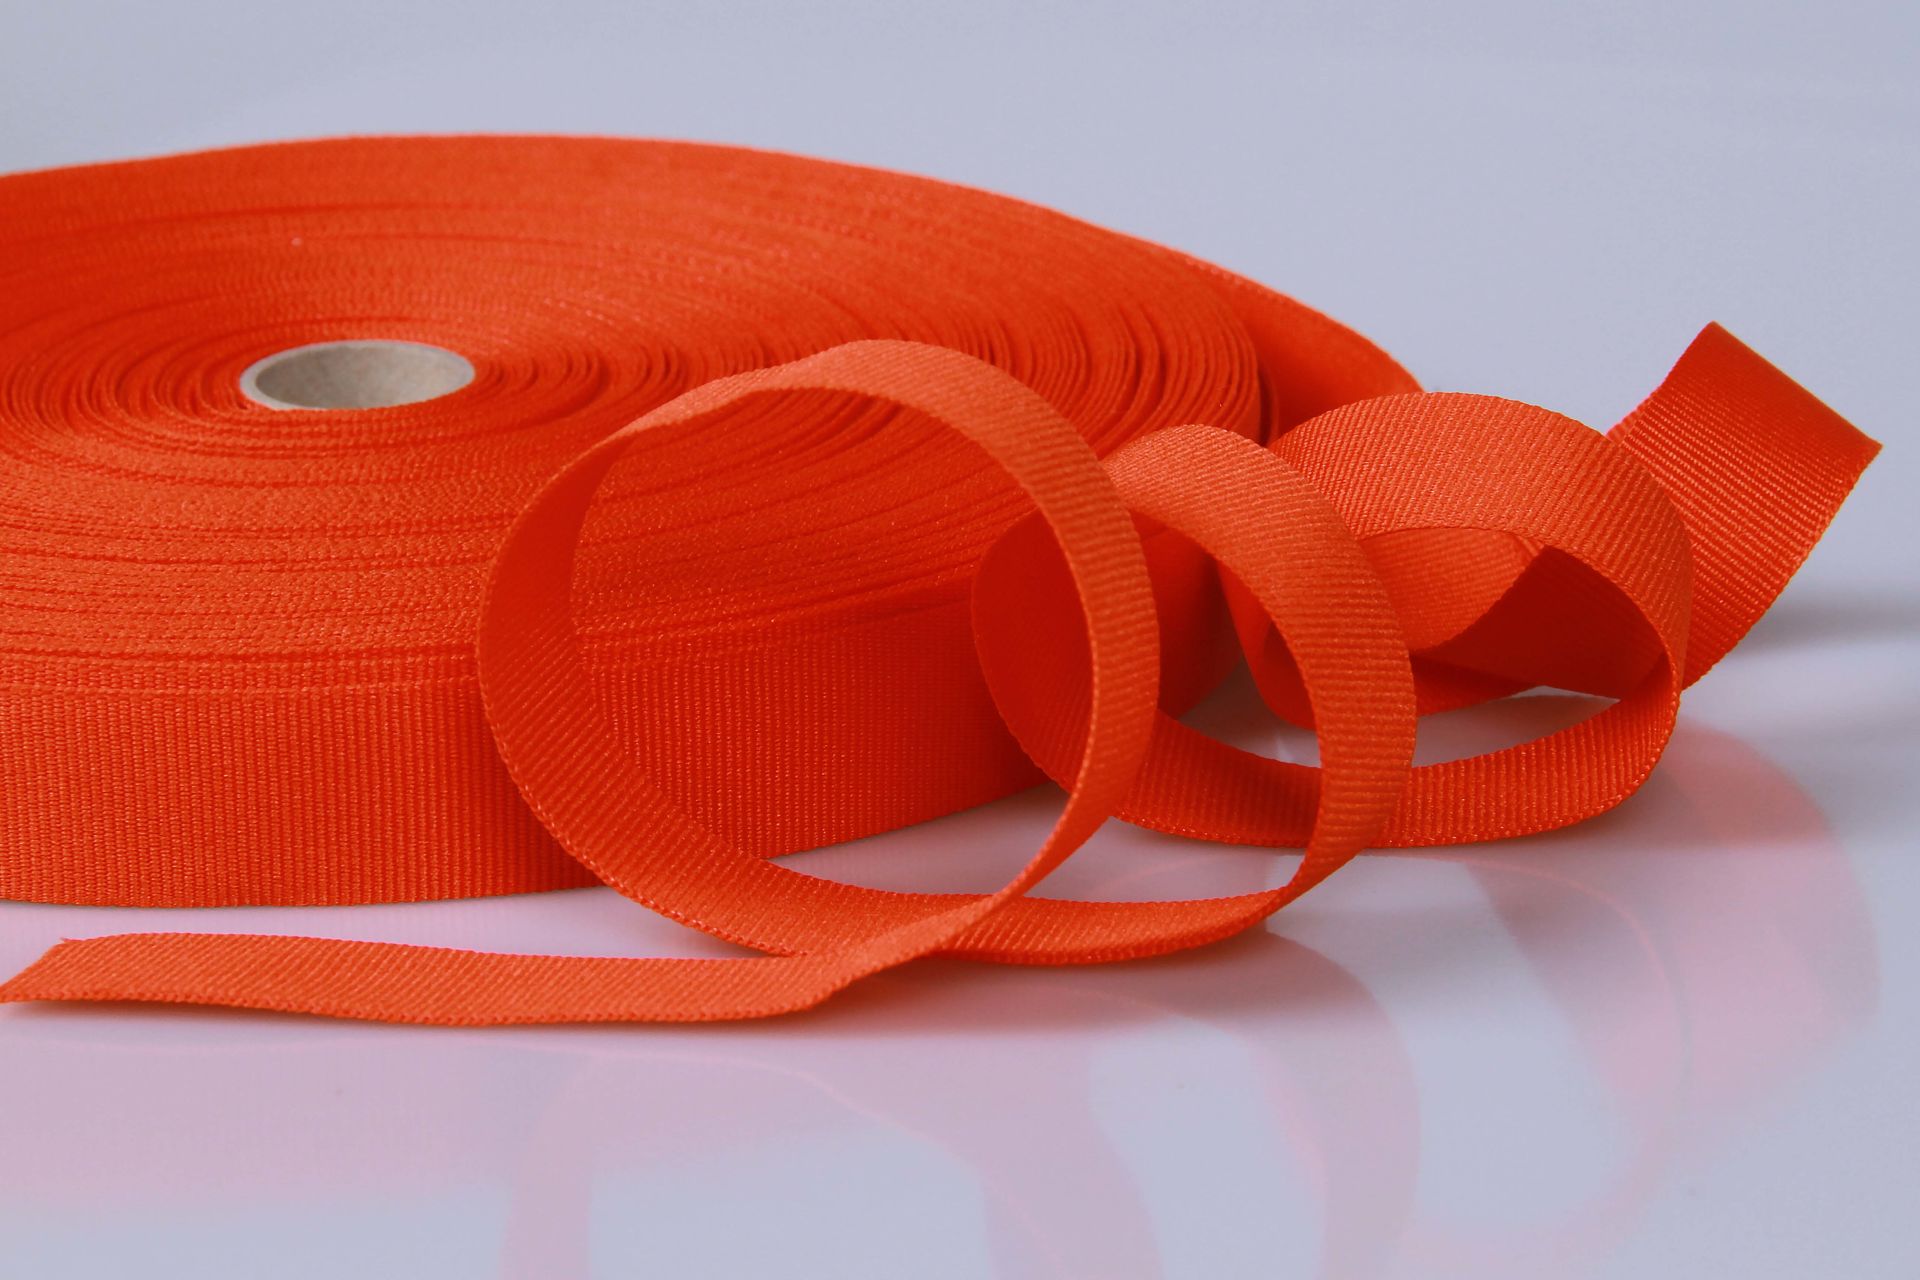 PES-Ripsband  -  25 mm breit  -  50 mtr. Rolle  -  orange  -  soft/weich